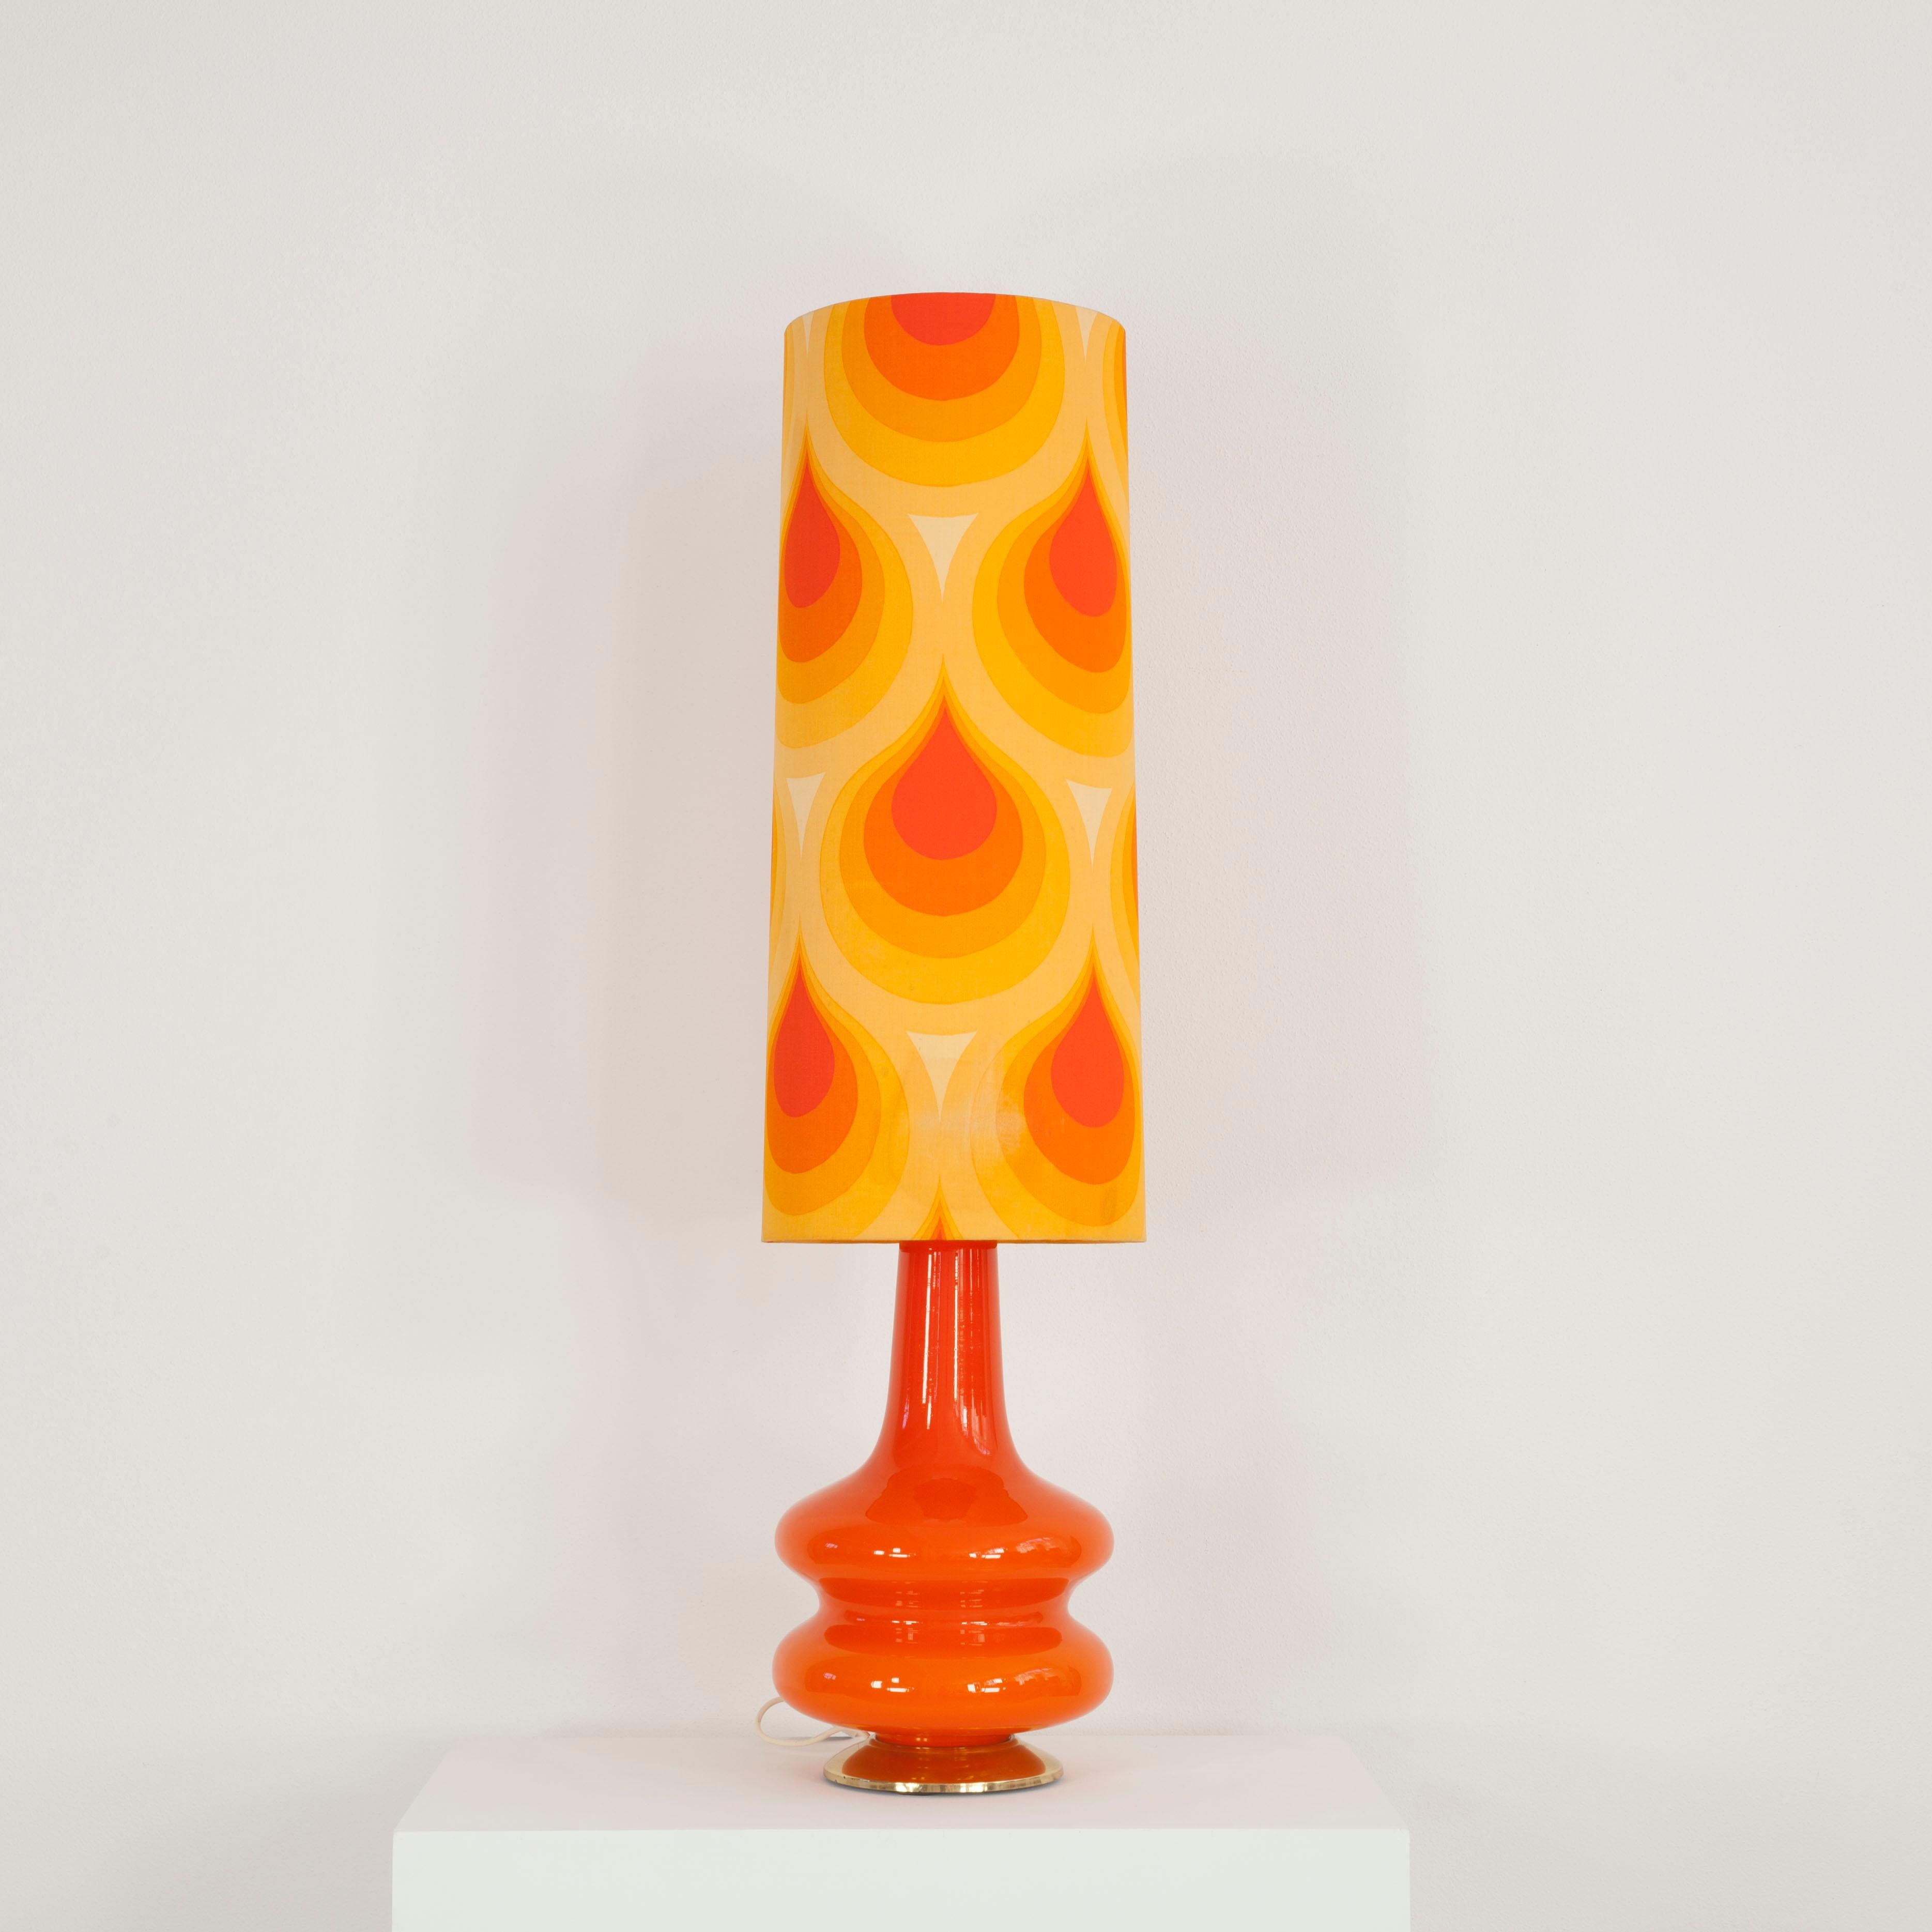 Ce lampadaire a été fabriqué dans les années 70. Il se compose d'une base en verre éclairée et d'un abat-jour en tissu avec un motif typique des années 70. 
La lampe peut être commutée séparément de 3 façons - socle seul, abat-jour seul ou les deux